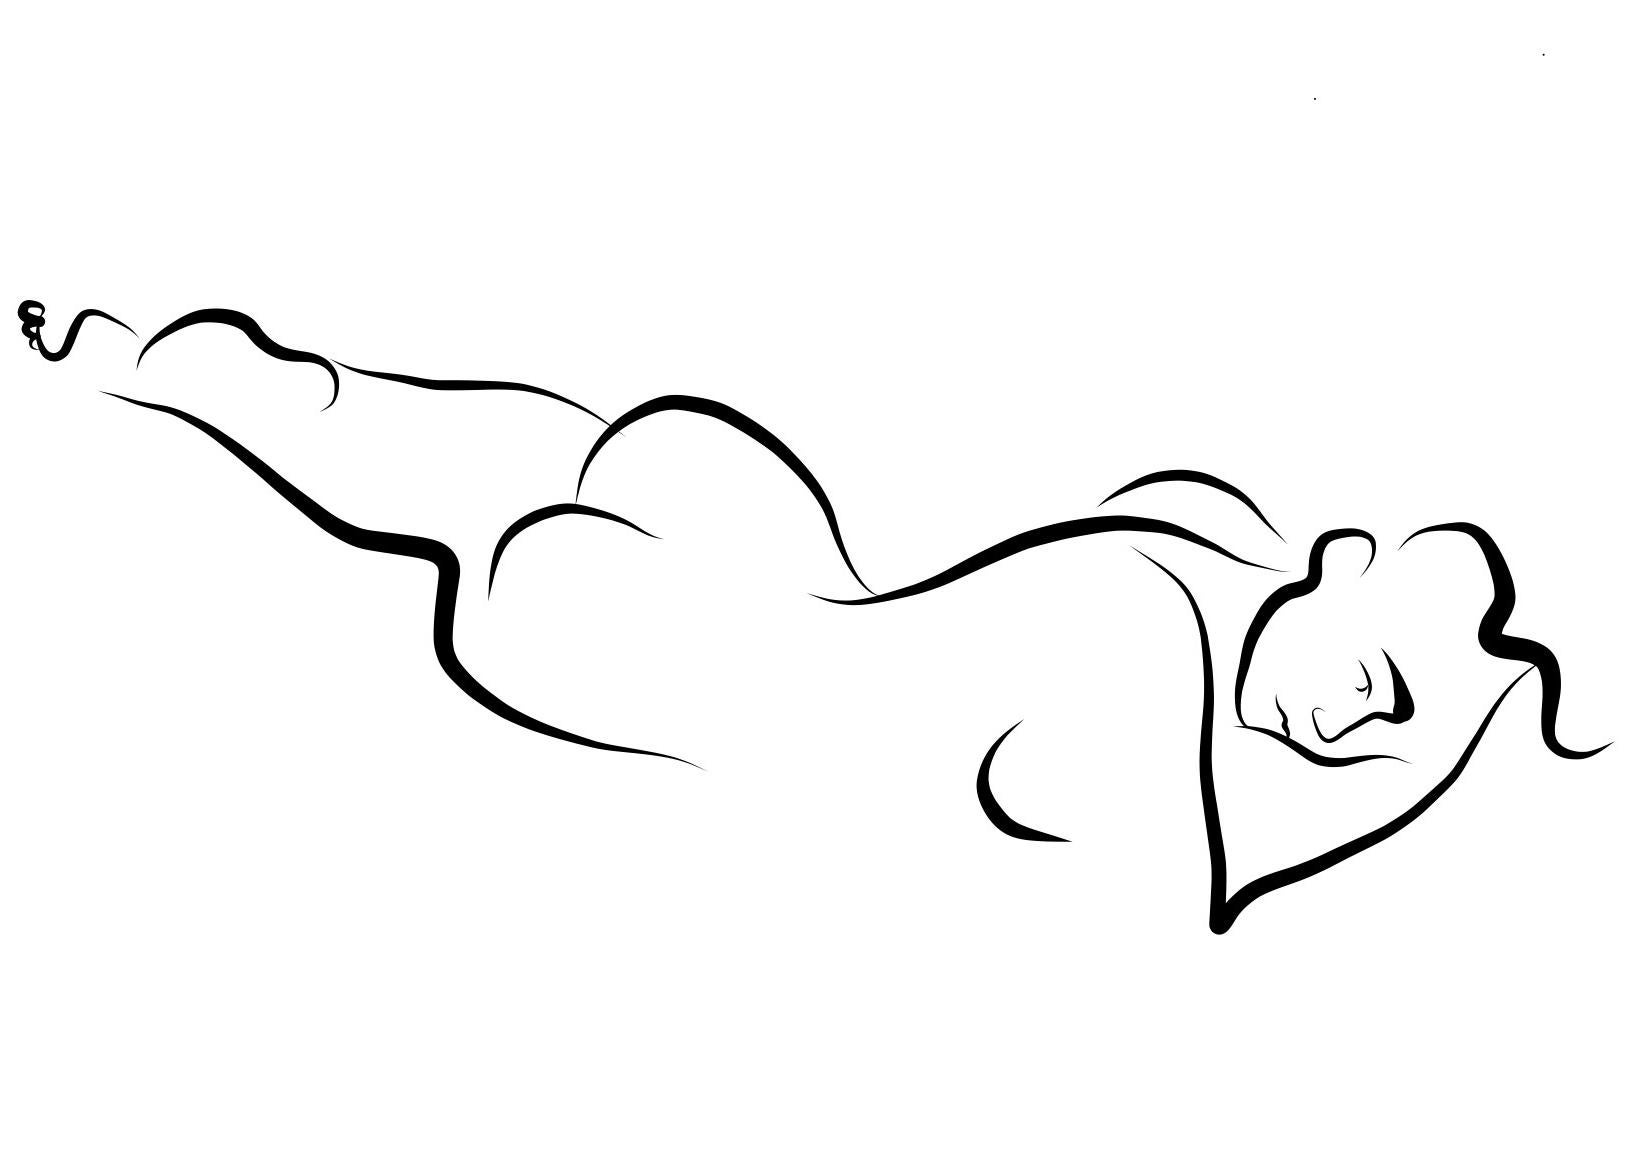 Haiku #1, 1/50   - Digital Vektor Zeichnung Liegende Weibliche Nackte Frau Figur